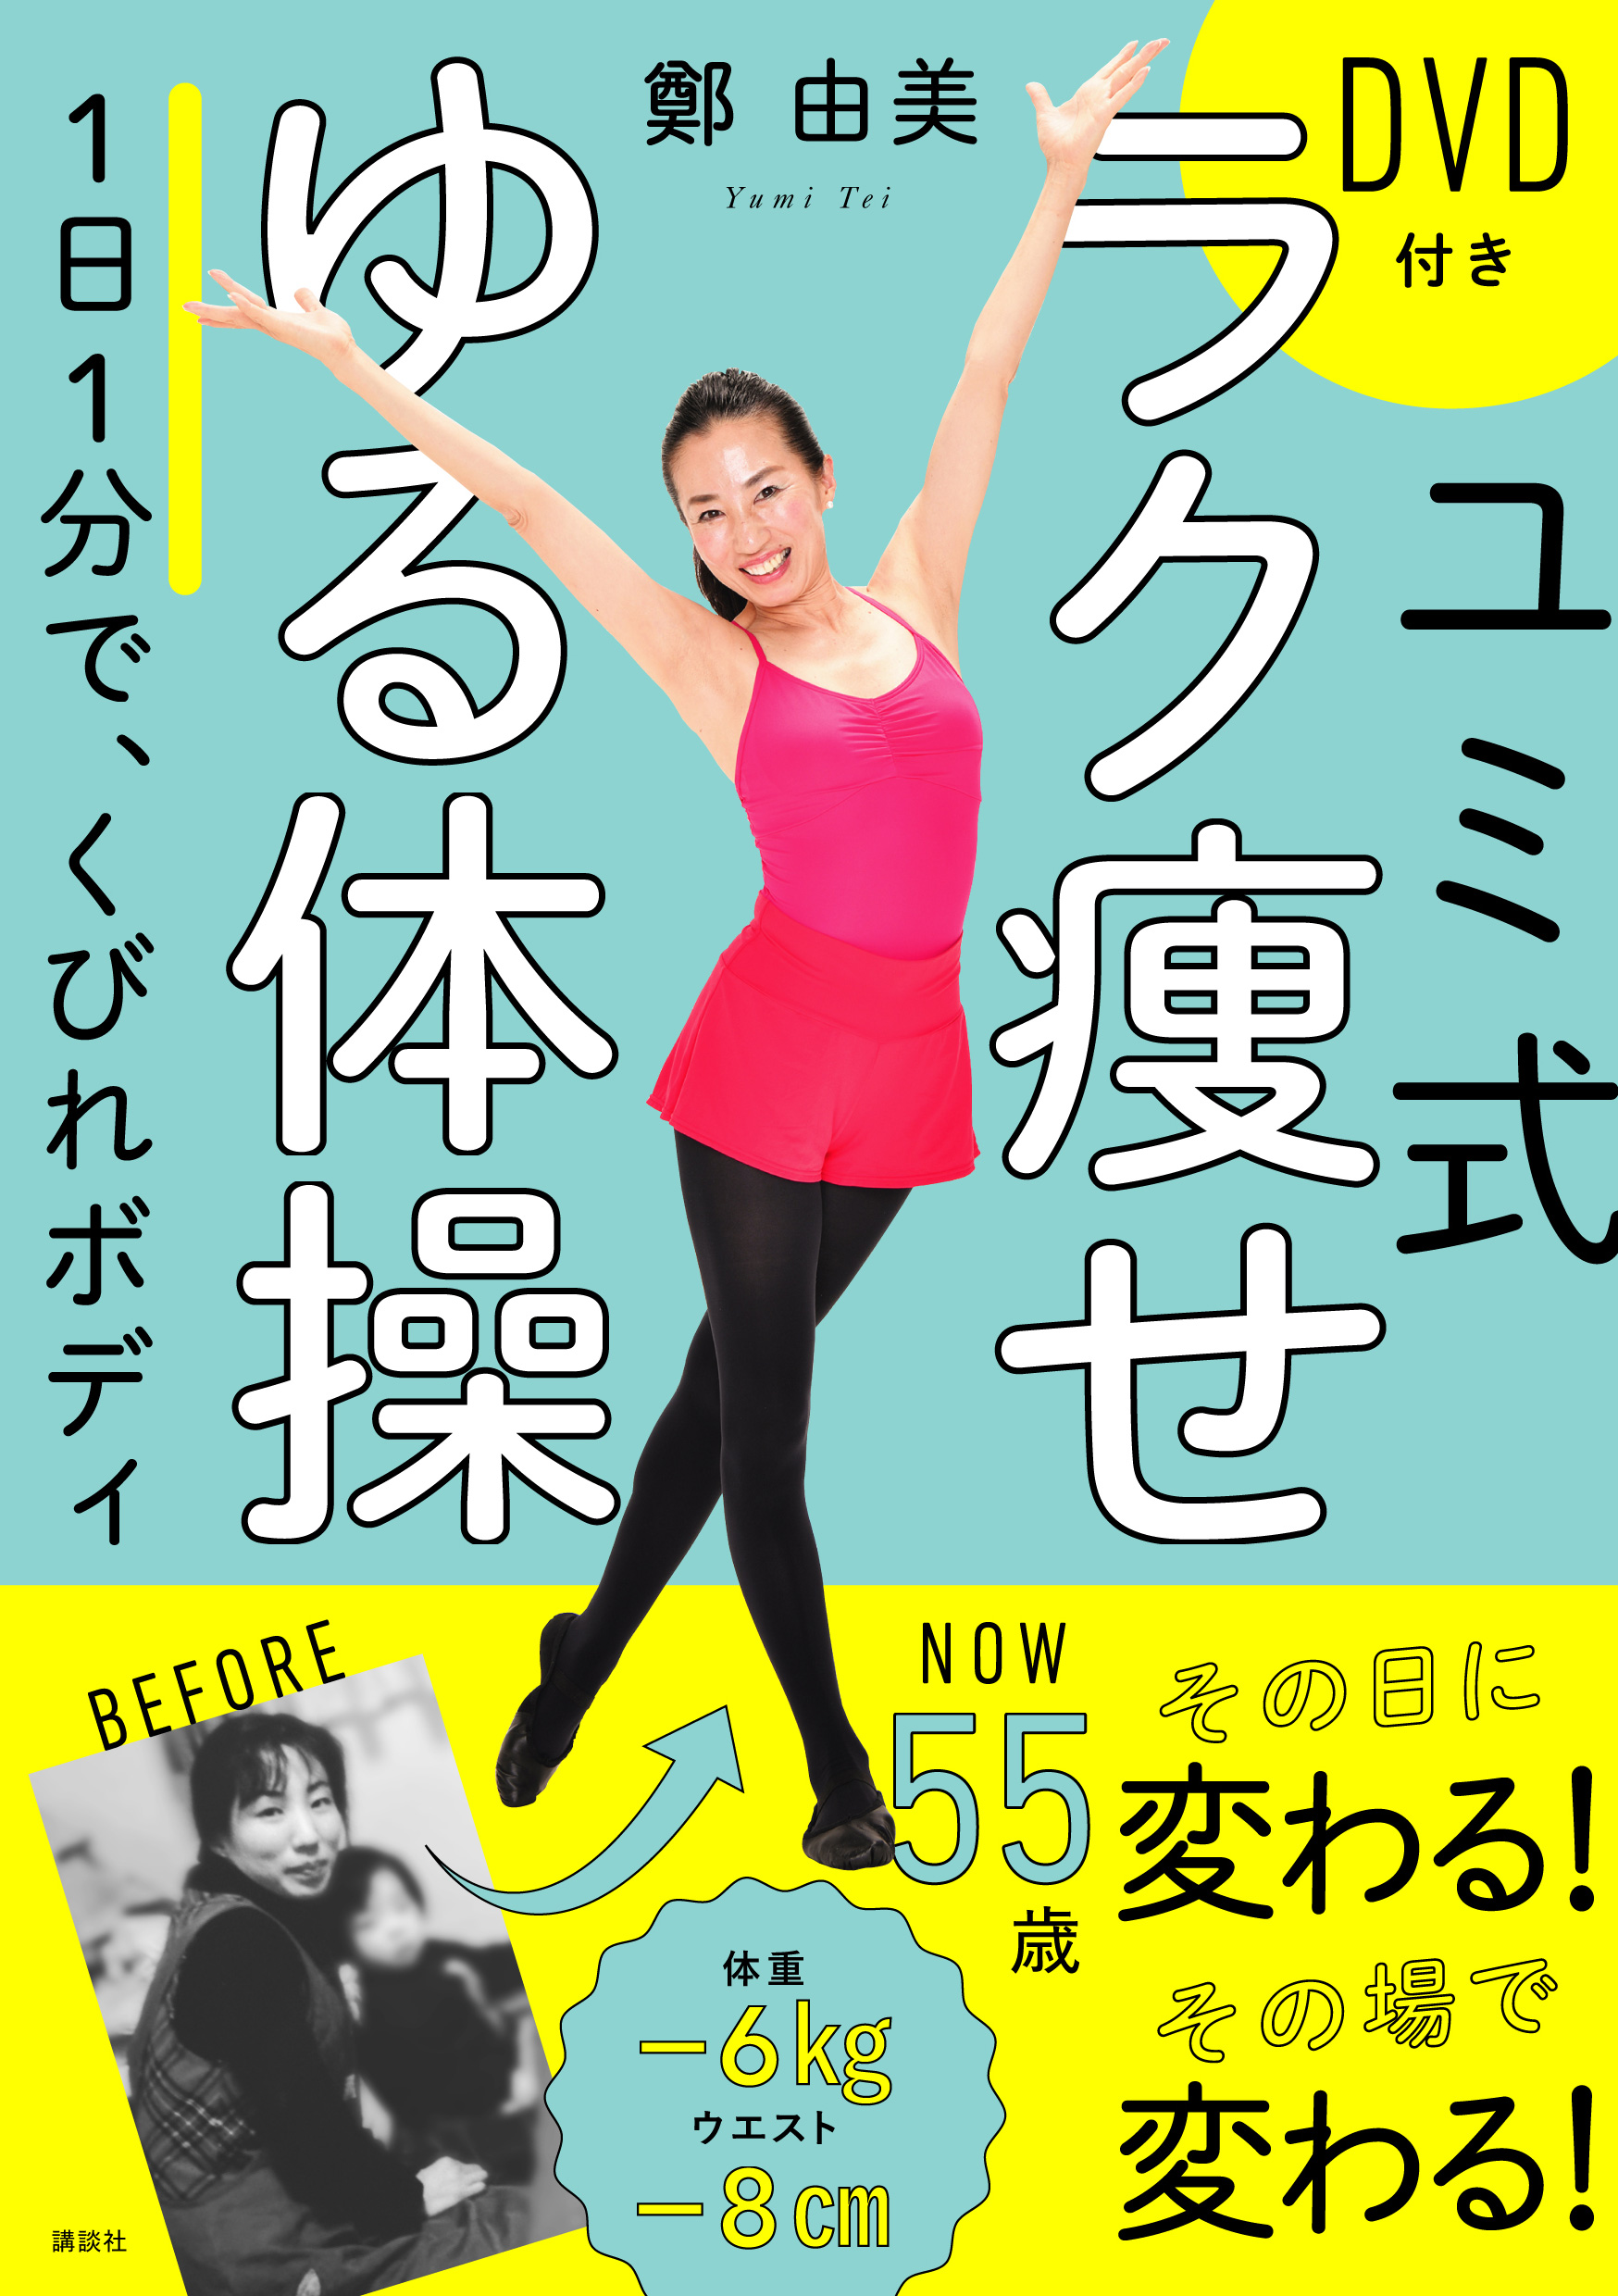 【東京 特別講座】出版感謝「ユミ式ラク痩せゆる体操」講座♪